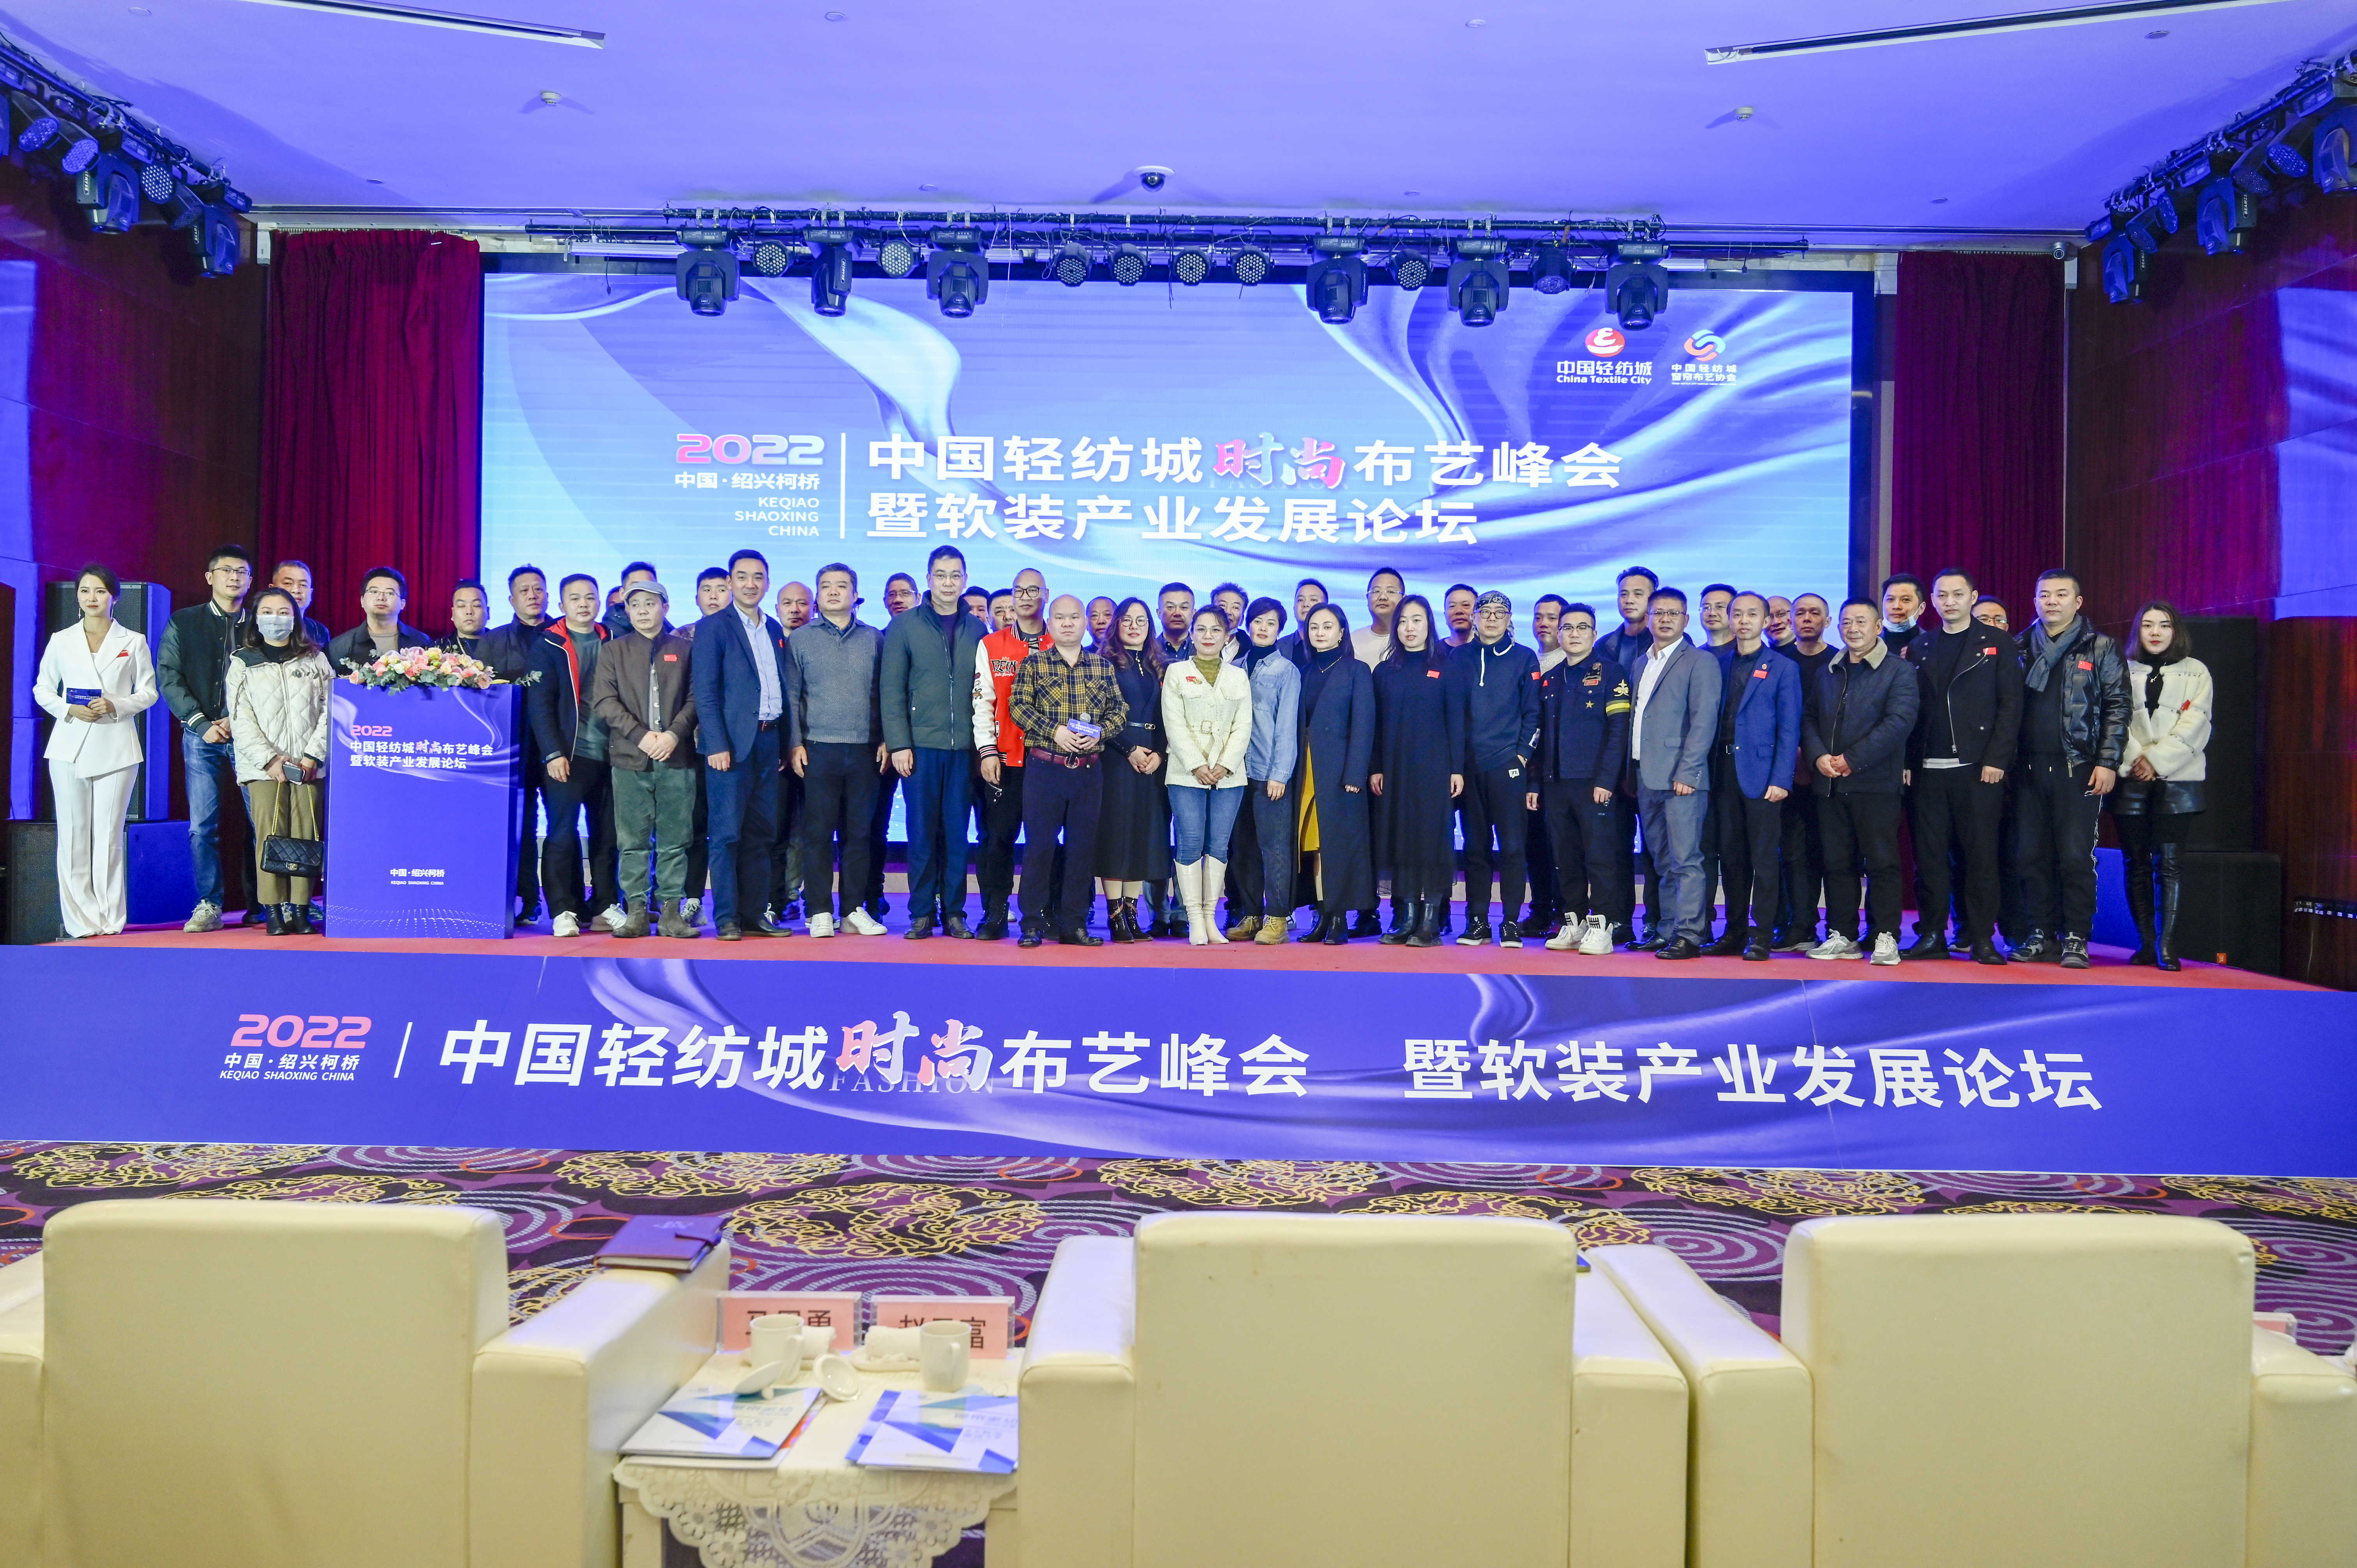 中国轻纺城时尚布艺峰会暨软装产业发展论坛成功举办！